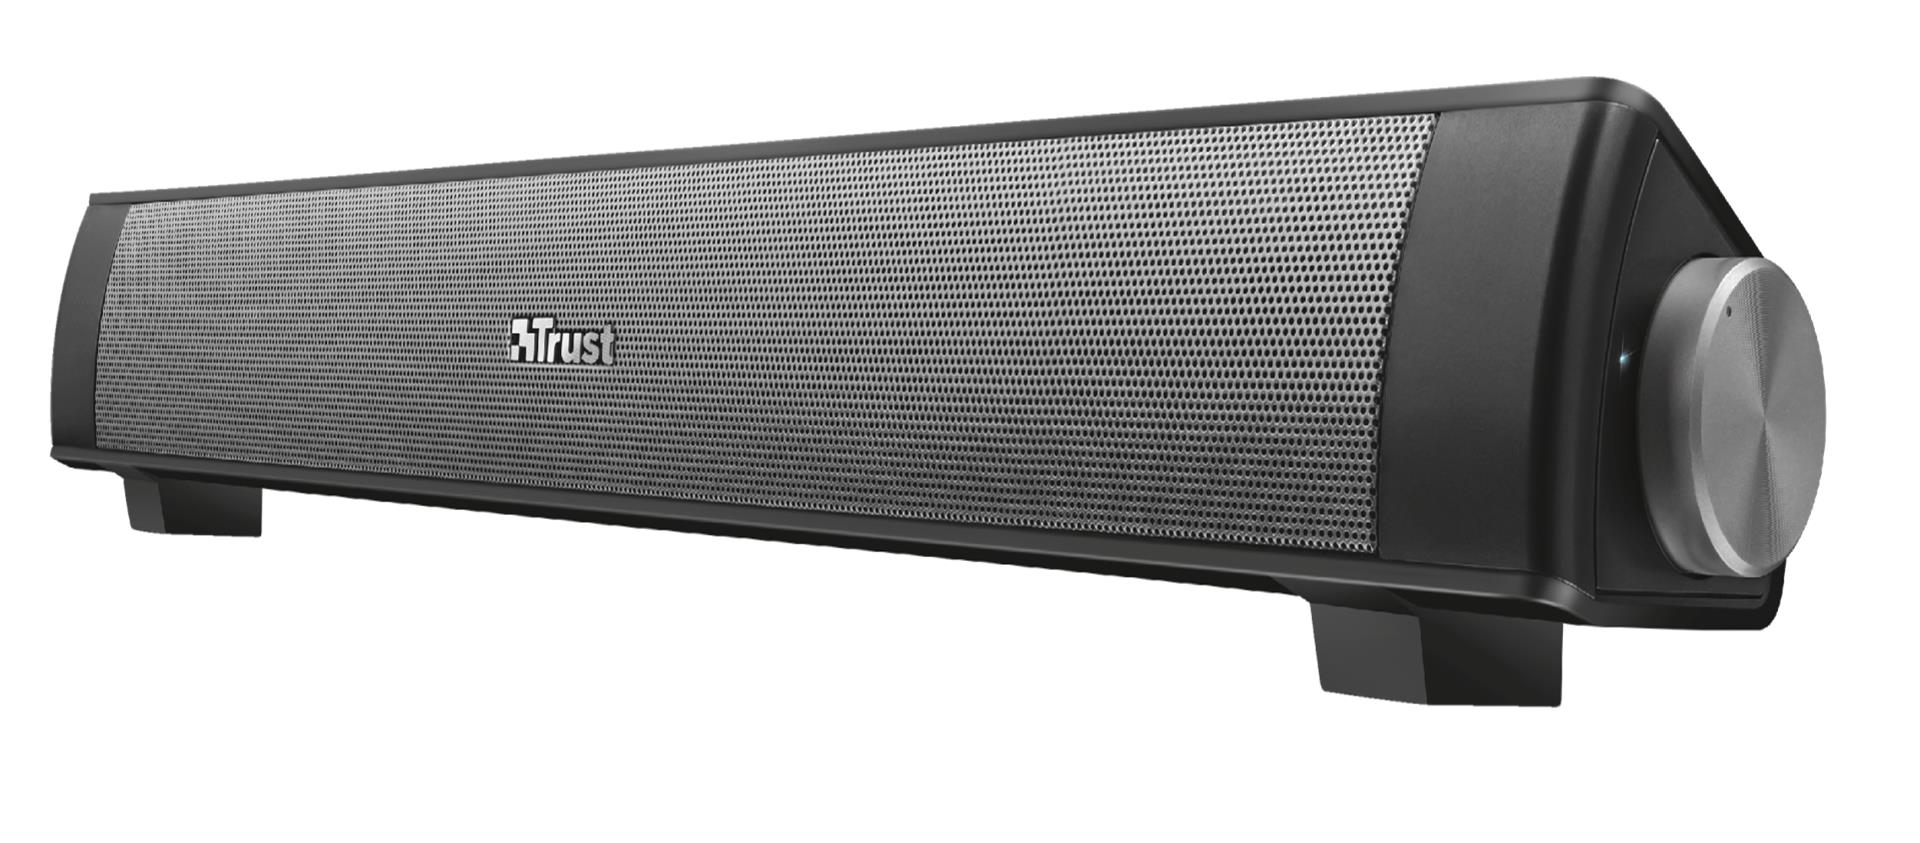 Trust 22015 Linen Sound Bar Enceinte 20W Bluetooth Noir